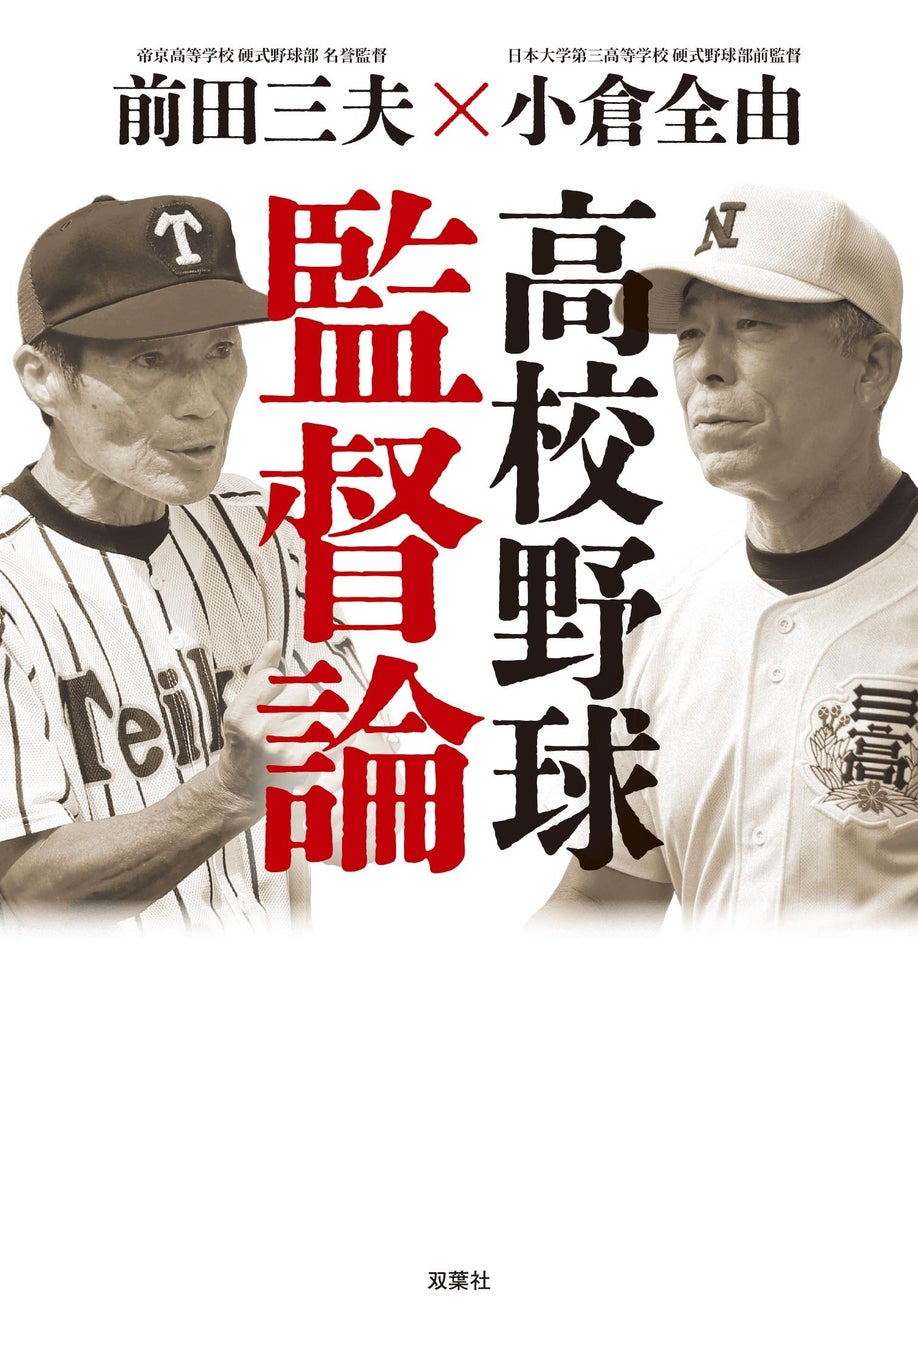 夏の甲子園大会開幕間近！　日本の高校野球界をリードしてきた名将による「監督論」刊行